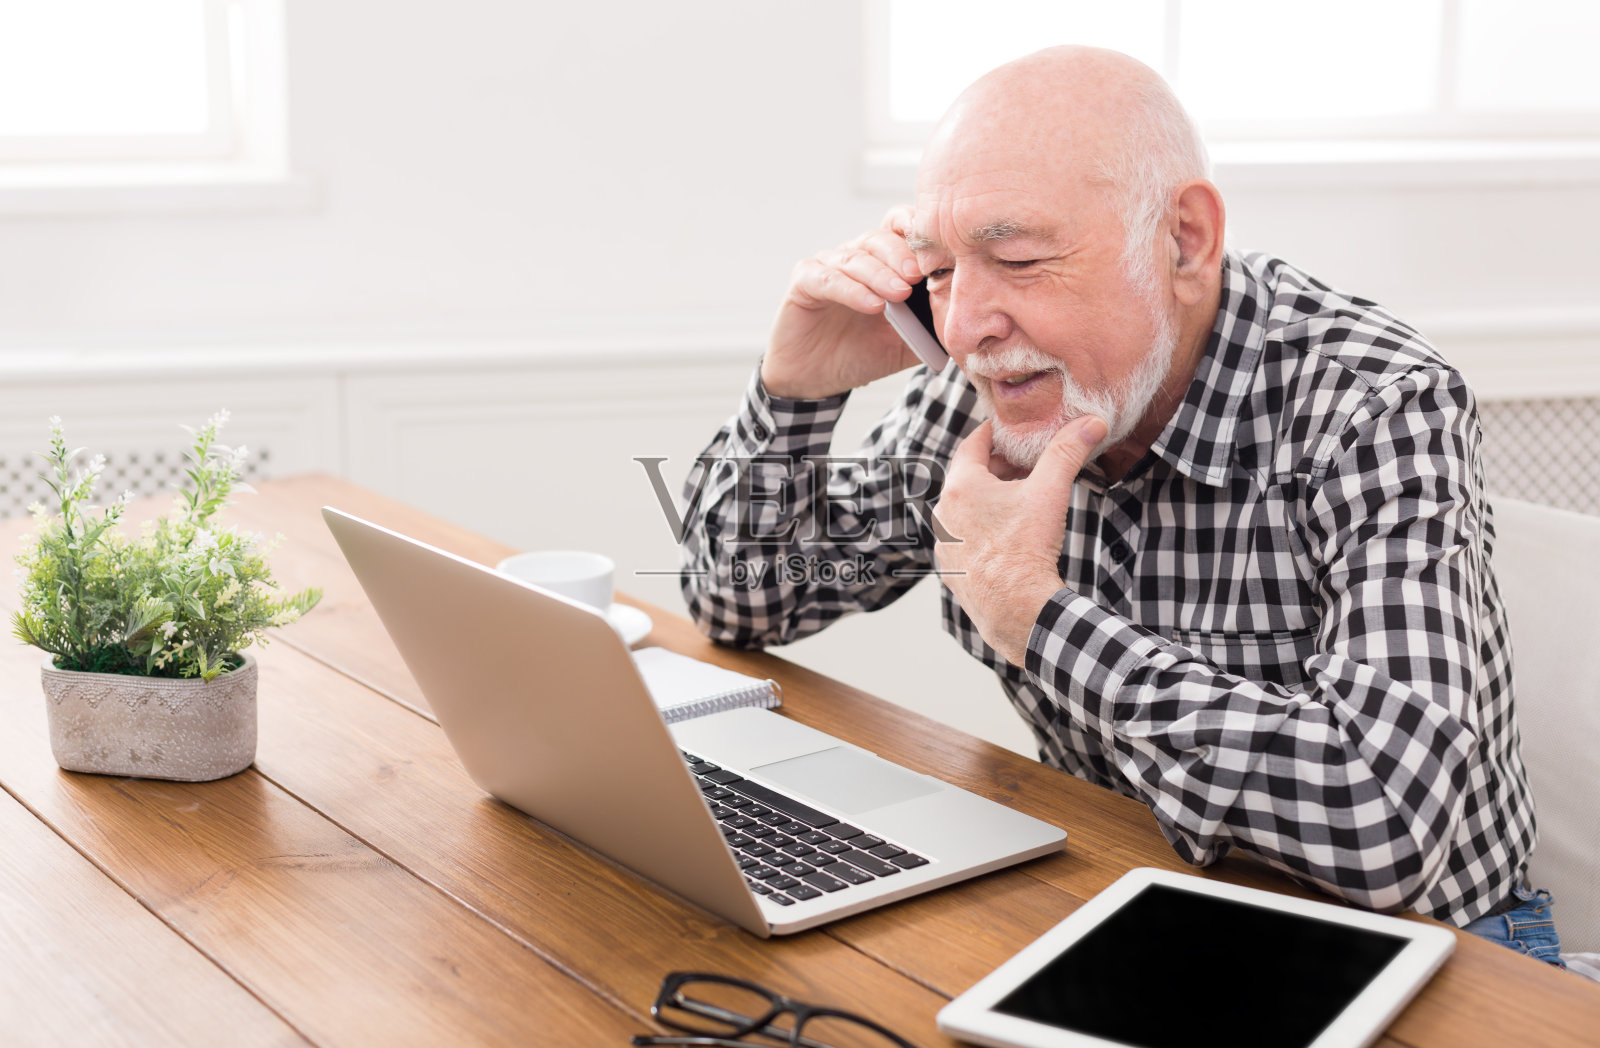 一个老男人用笔记本电脑打电话照片摄影图片